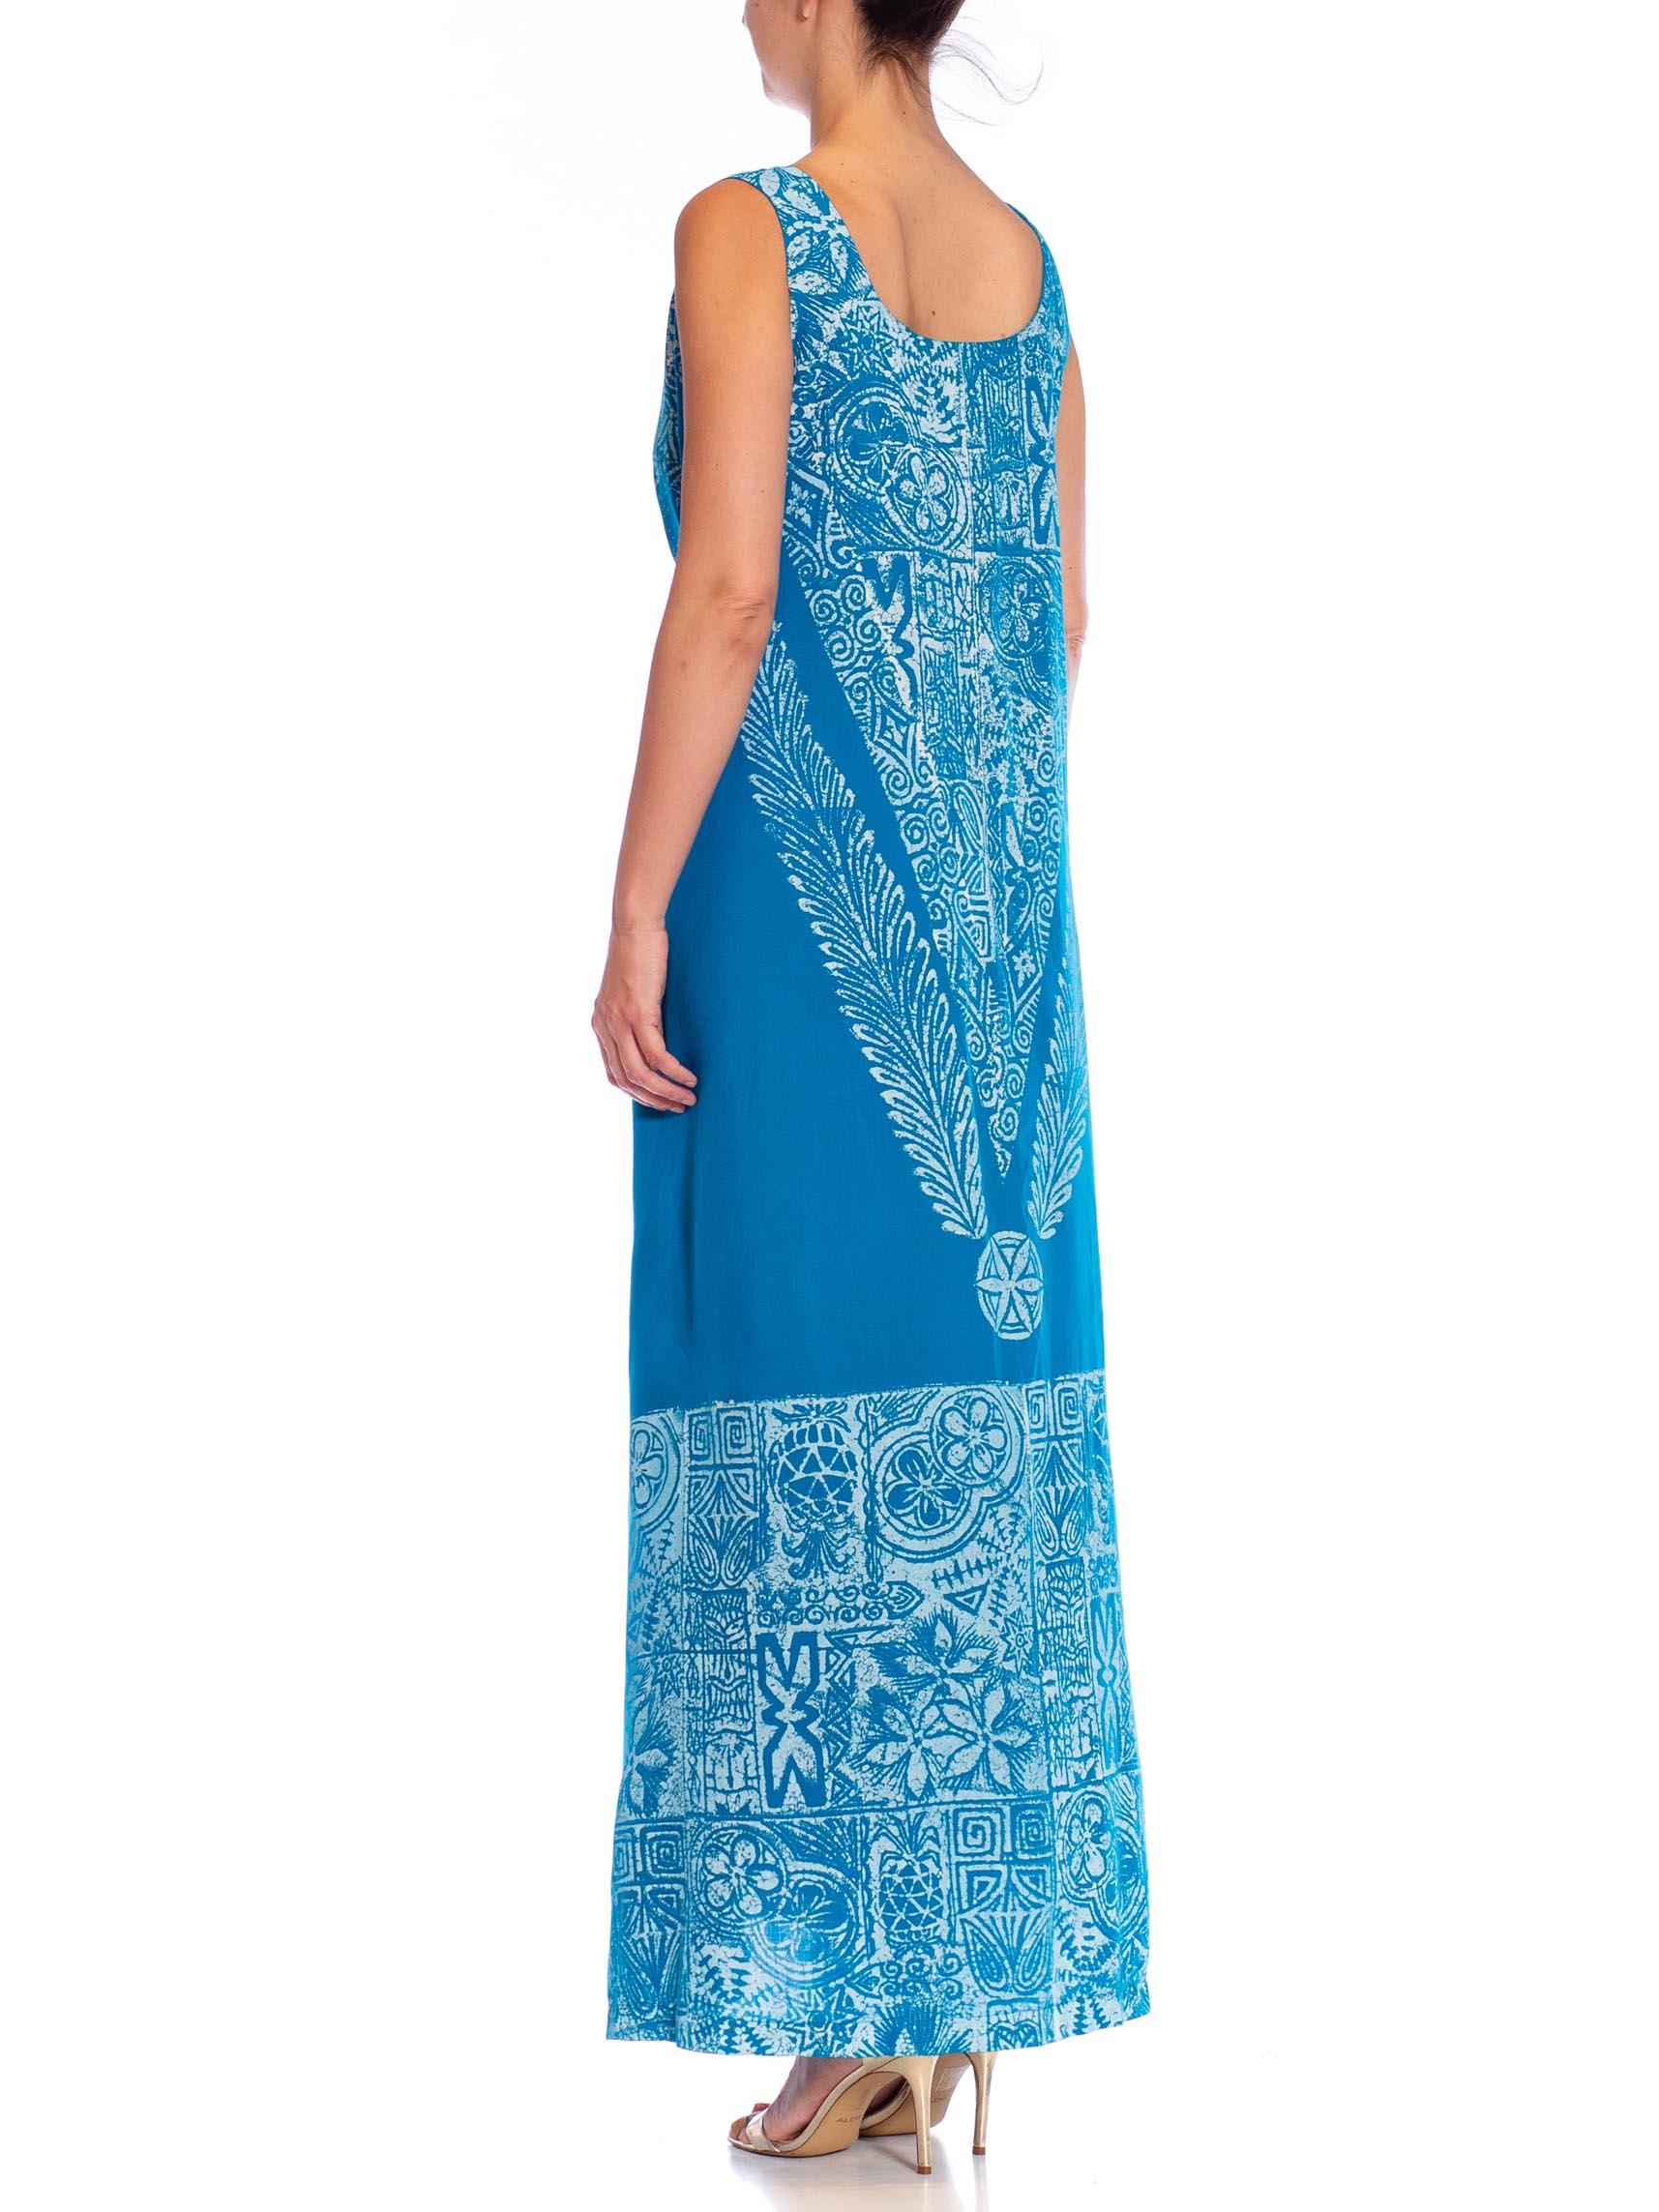 1980S Teal Cotton Blend Tiki Print Wrap Dress For Sale 2